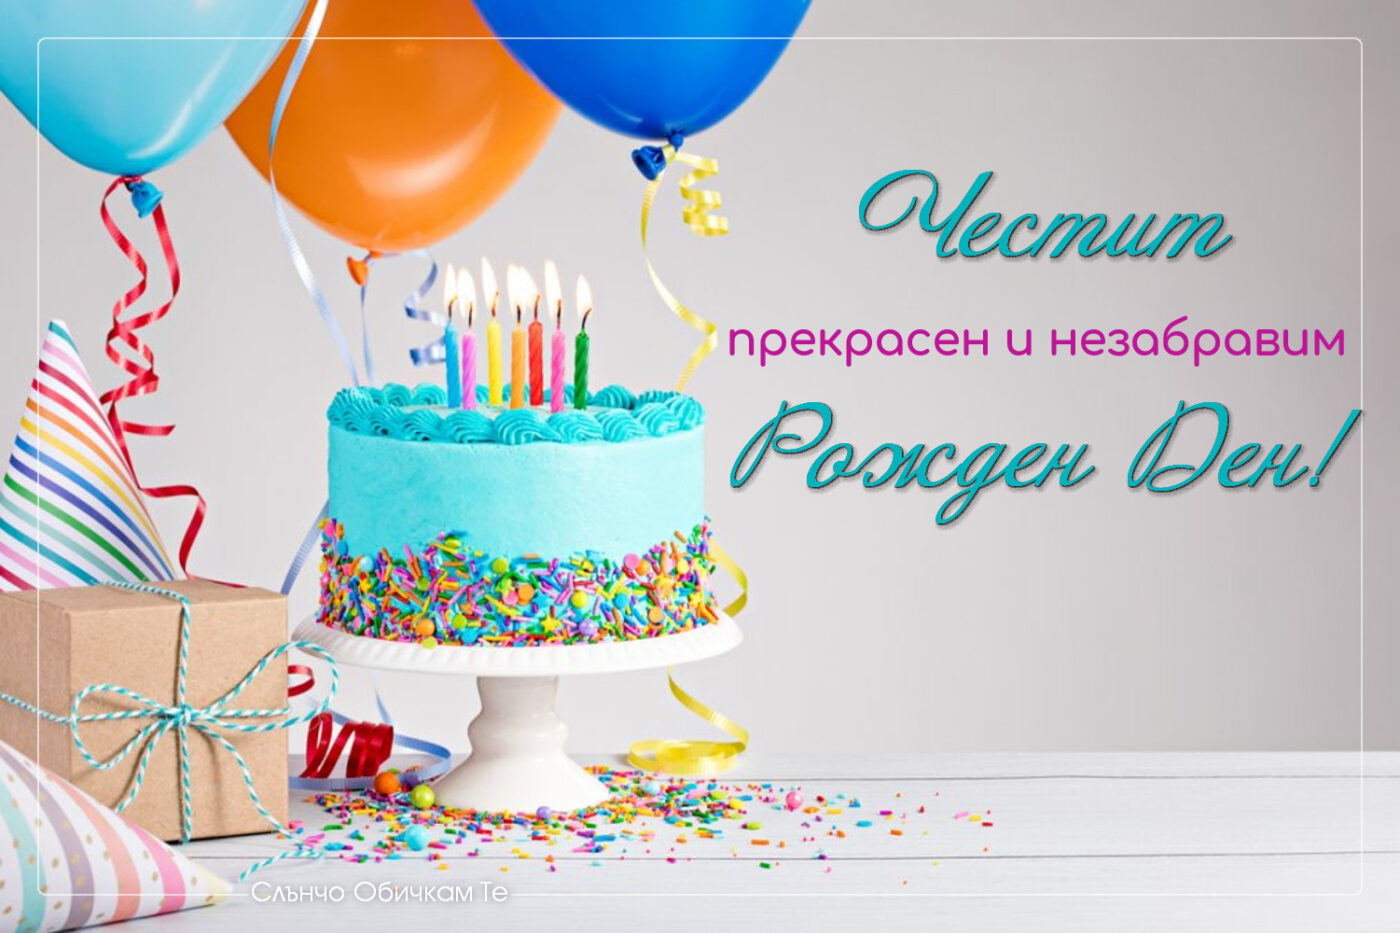 Честит прекрасен и незабравим рожден ден, торта със свещички, картички за рожден ден, пожелания за рожден ден